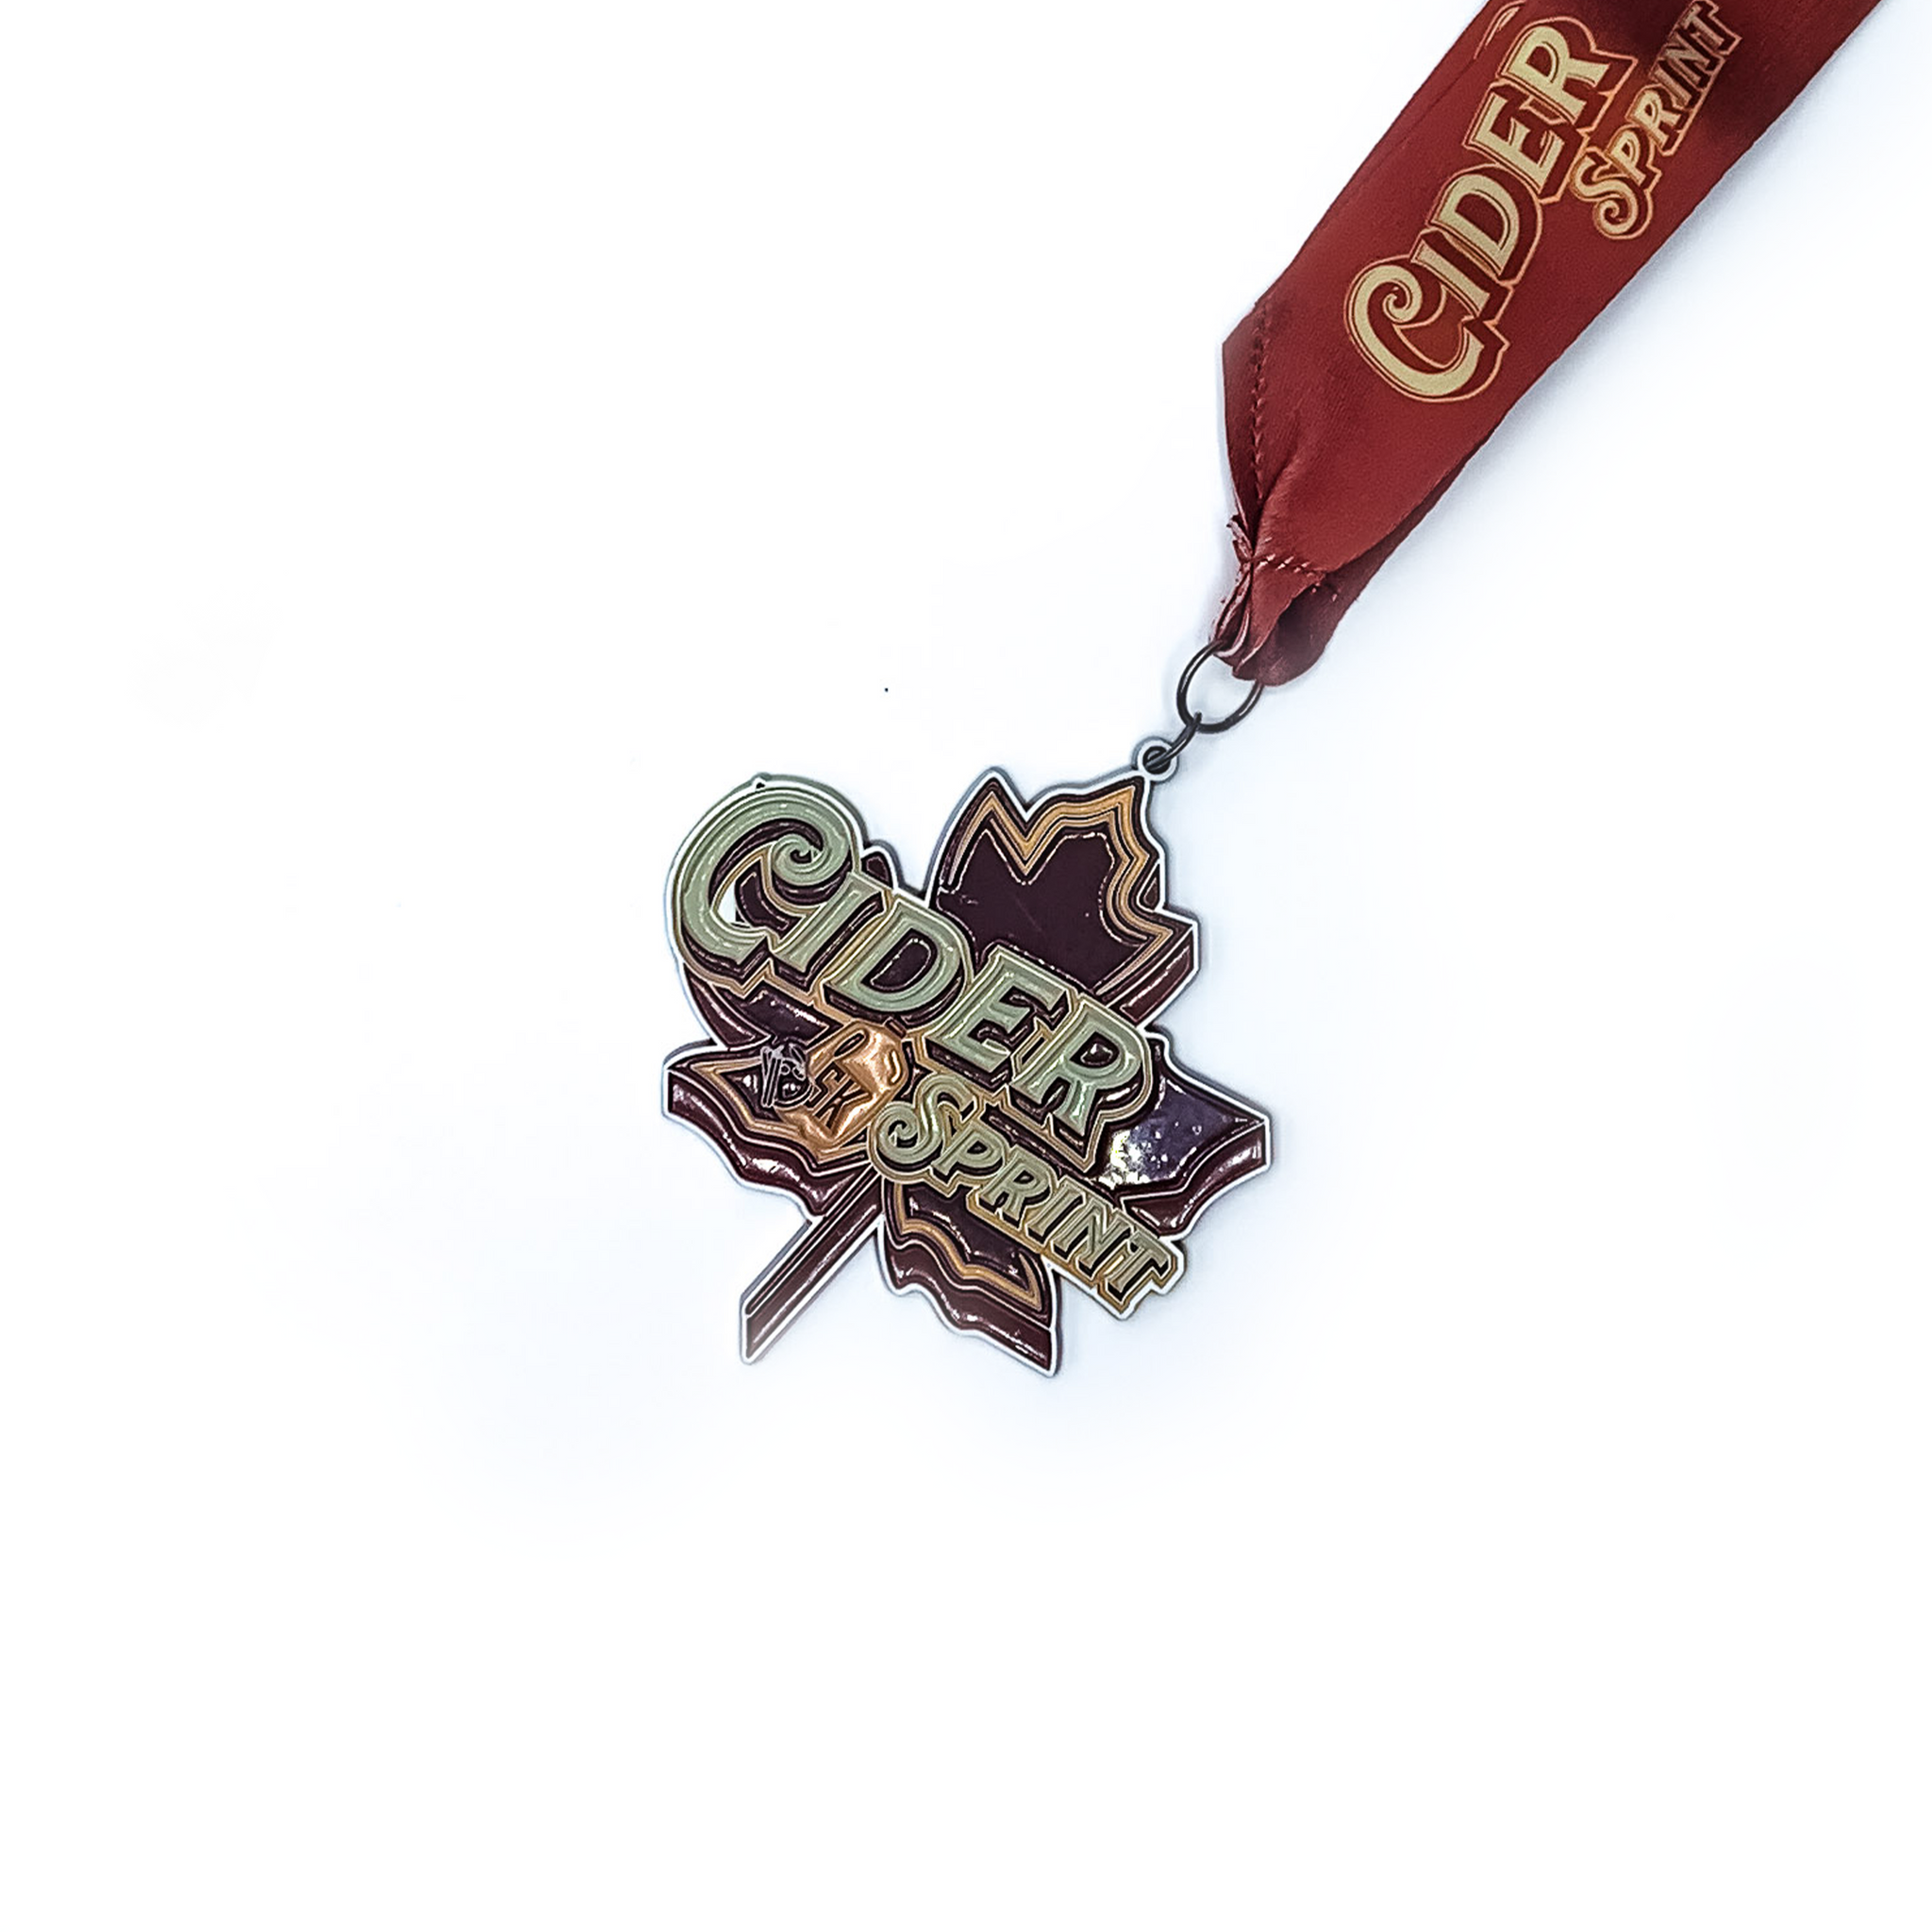 Cider Sprint 5k  - Entry + Medal